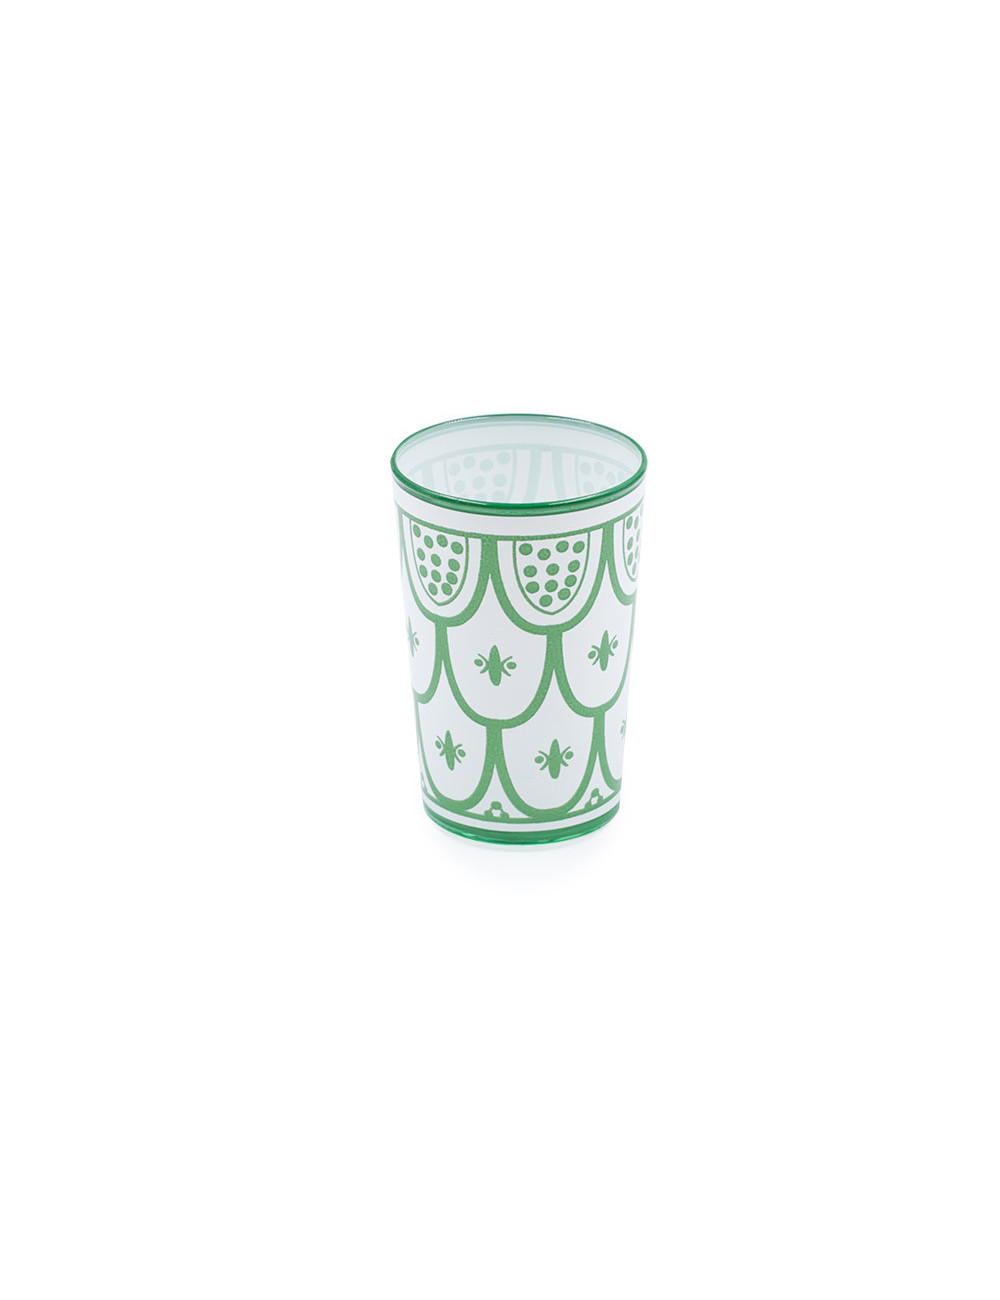 Bicchiere di vetro marocchino decorato in verde su fondo bianco - La Pianta del Tè shop online